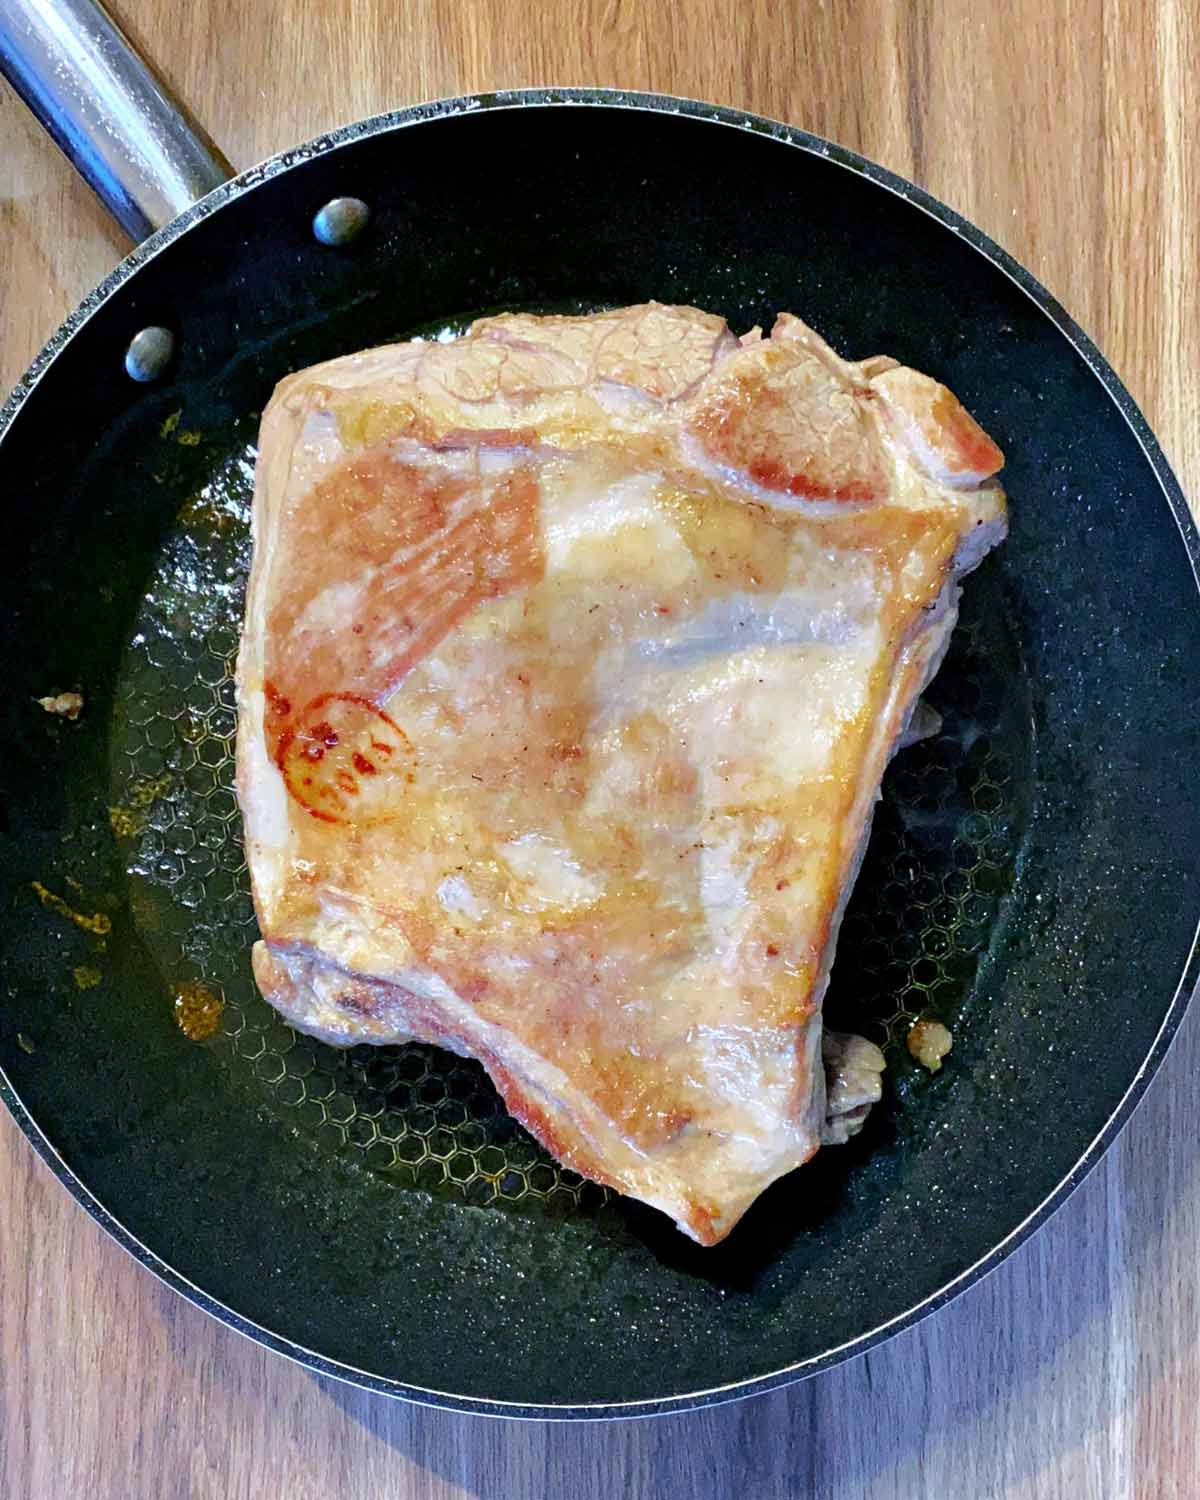 Browned lamb shoulder in a frying pan.